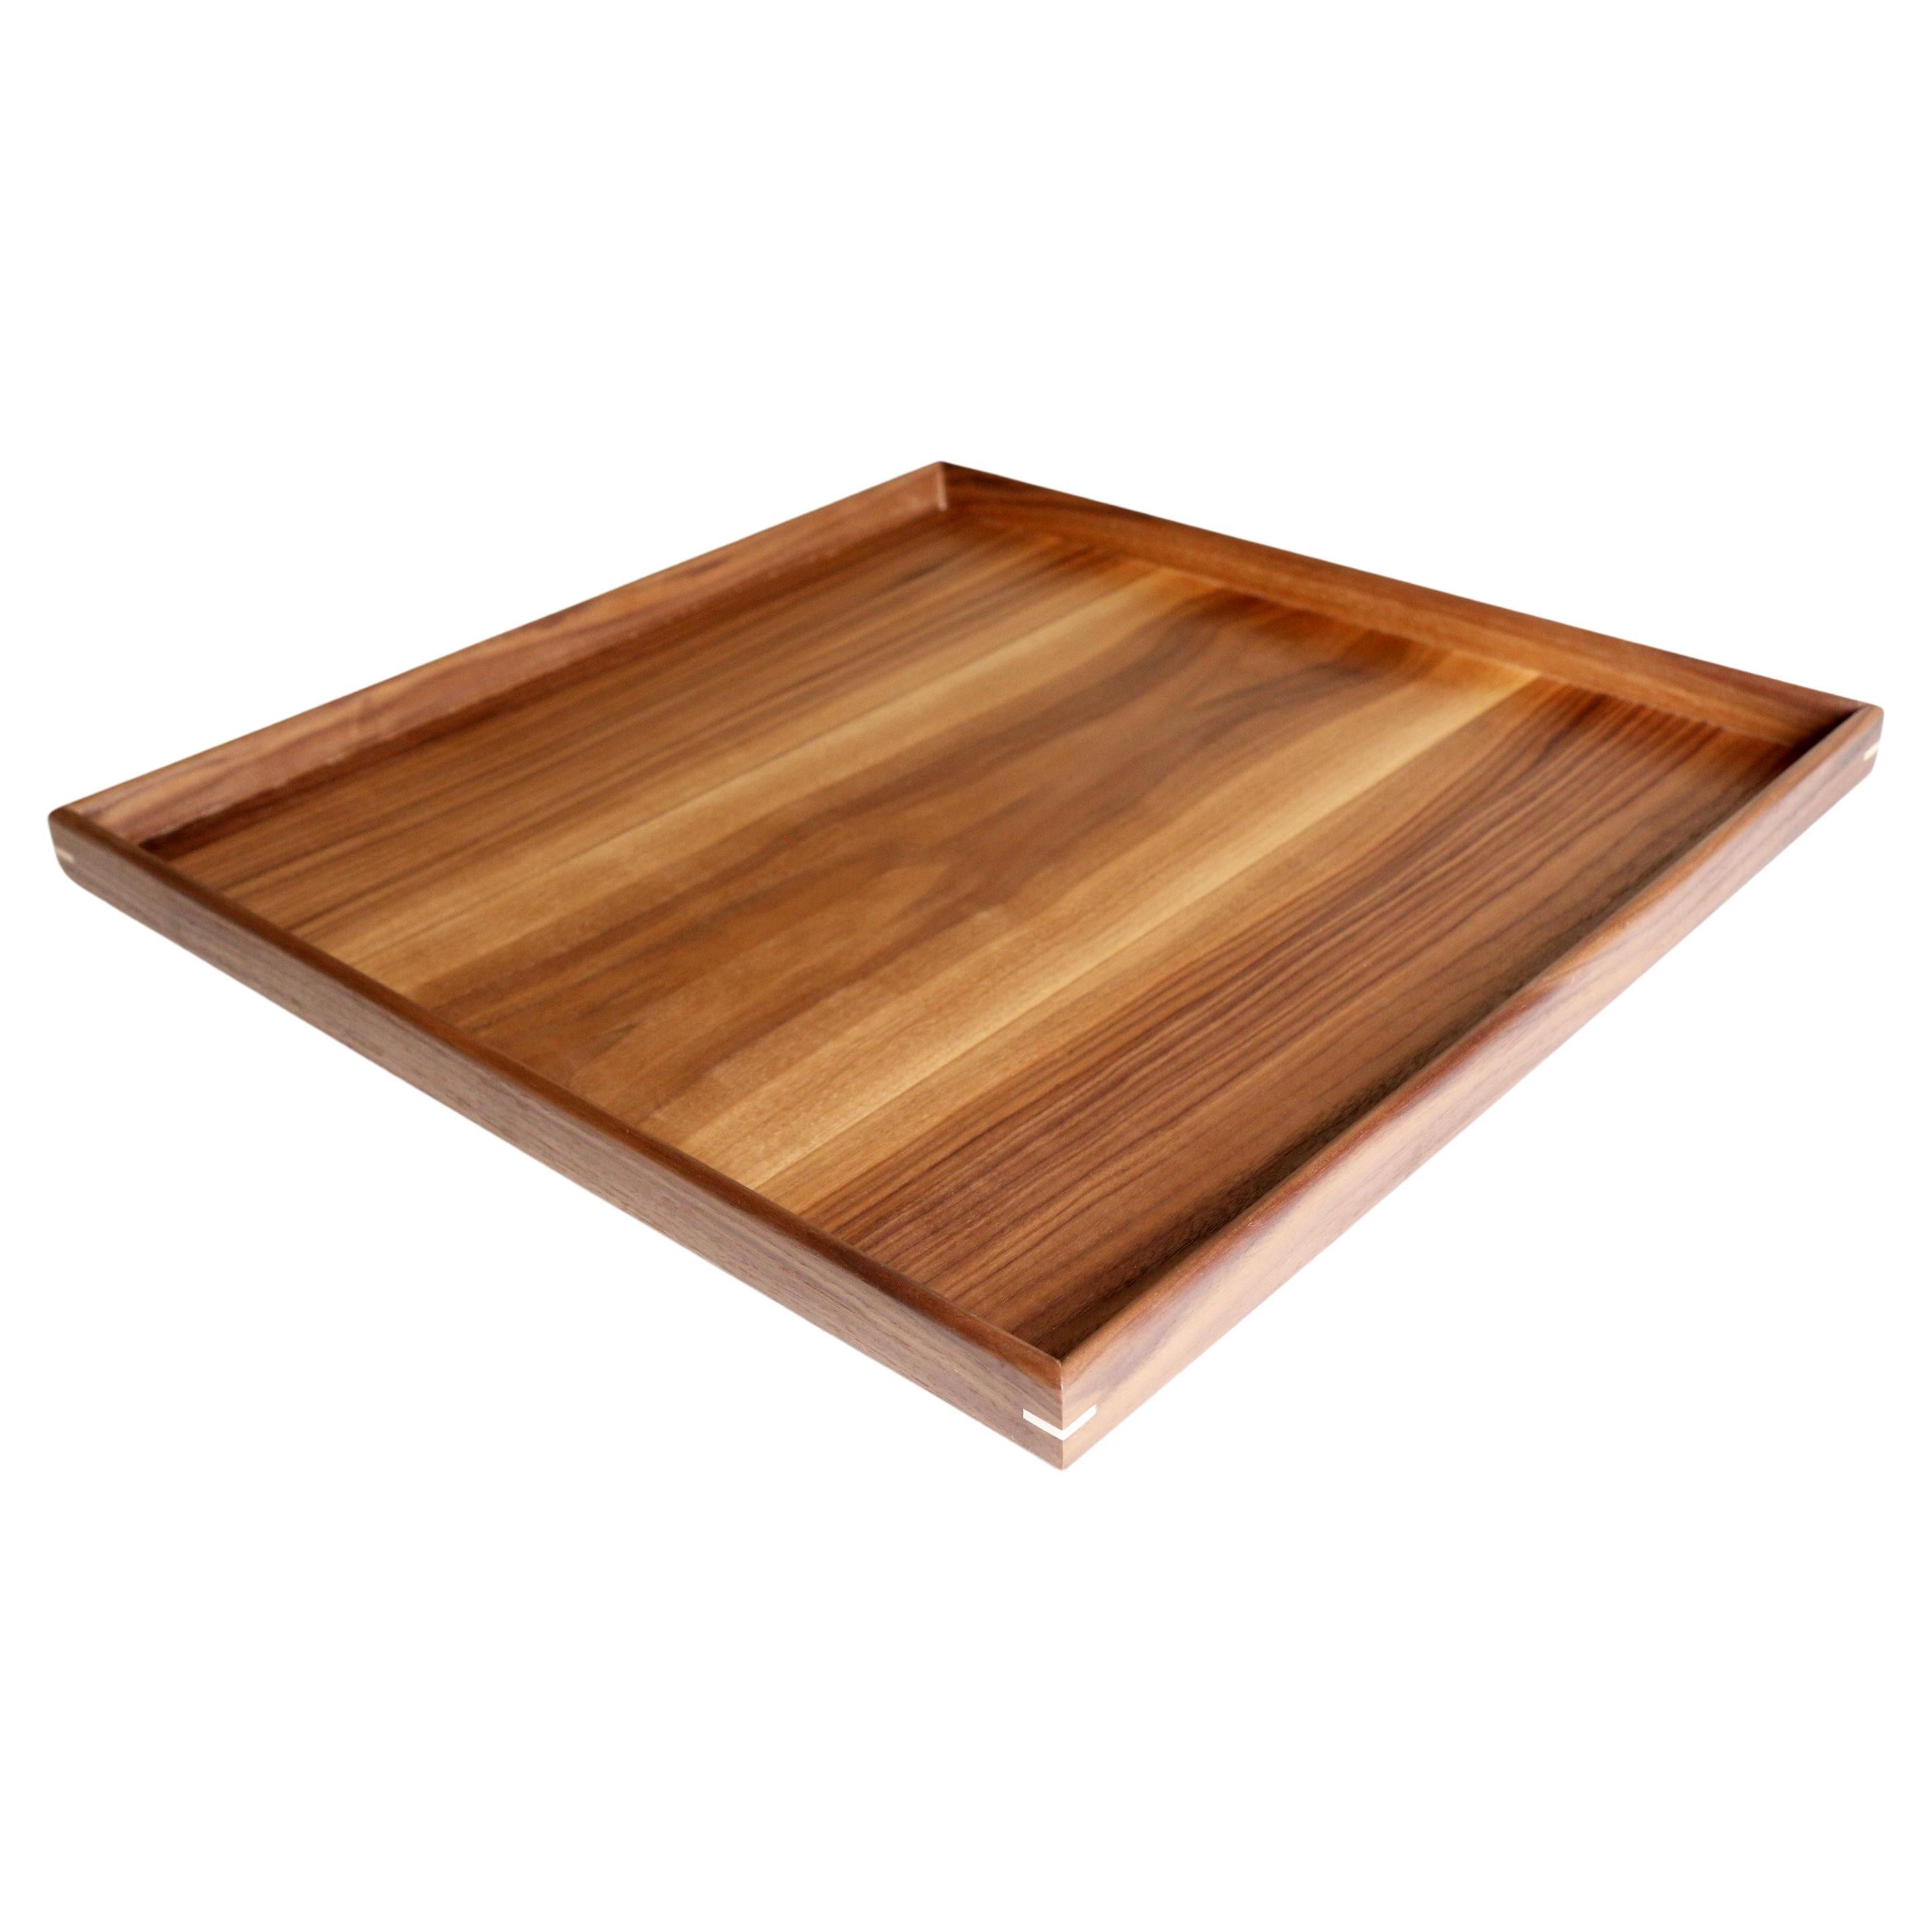 Plateau de service carré en bois de noyer fait à la main, 45 cm x 45 cm